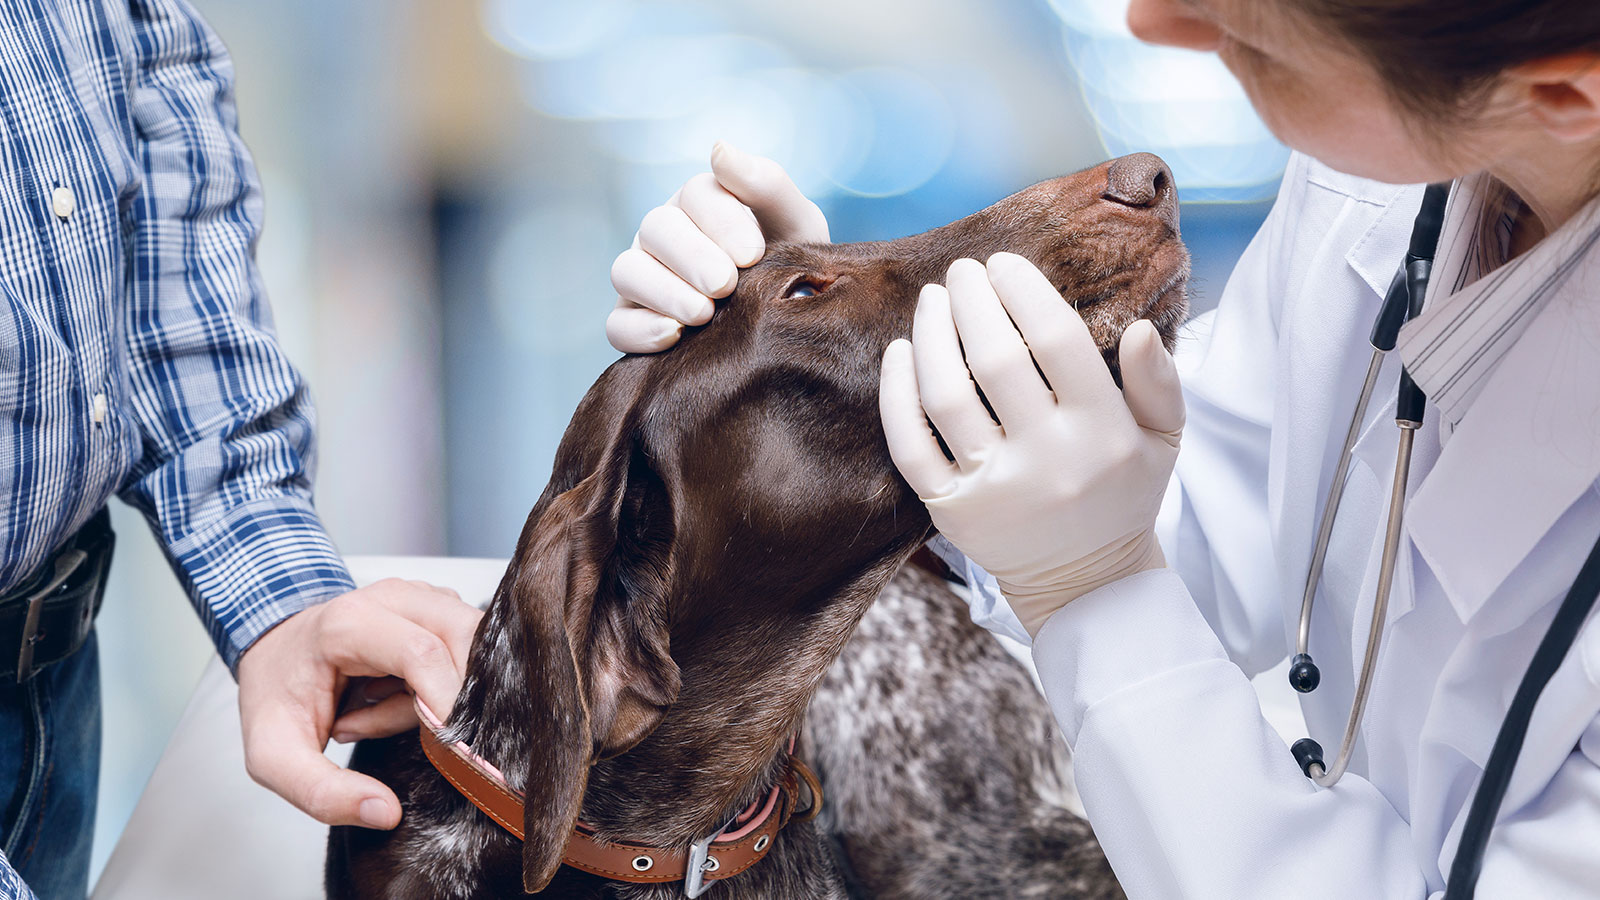 Ray bliver nervøs Vær venlig Undgå stress hos din hund ved dyrlægen - Giv din hund en god oplevelse  Bauta Forsikring